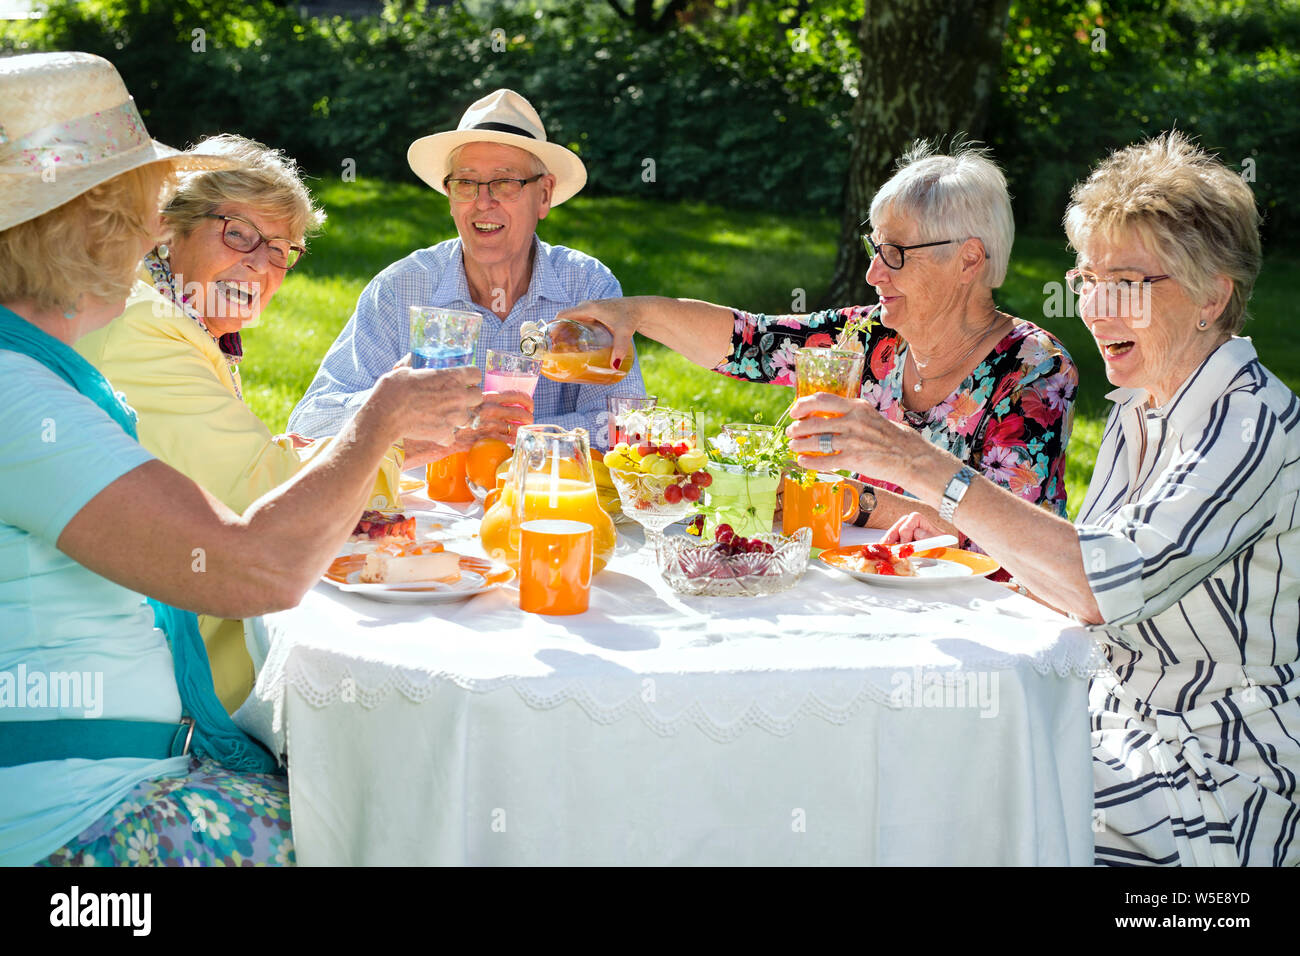 Feliz ancianos sentados alrededor de la mesa de picnic. Grupo de ancianos comer pastel de frutas y beber jugo de naranja, una mujer sirve jugo. Foto de stock